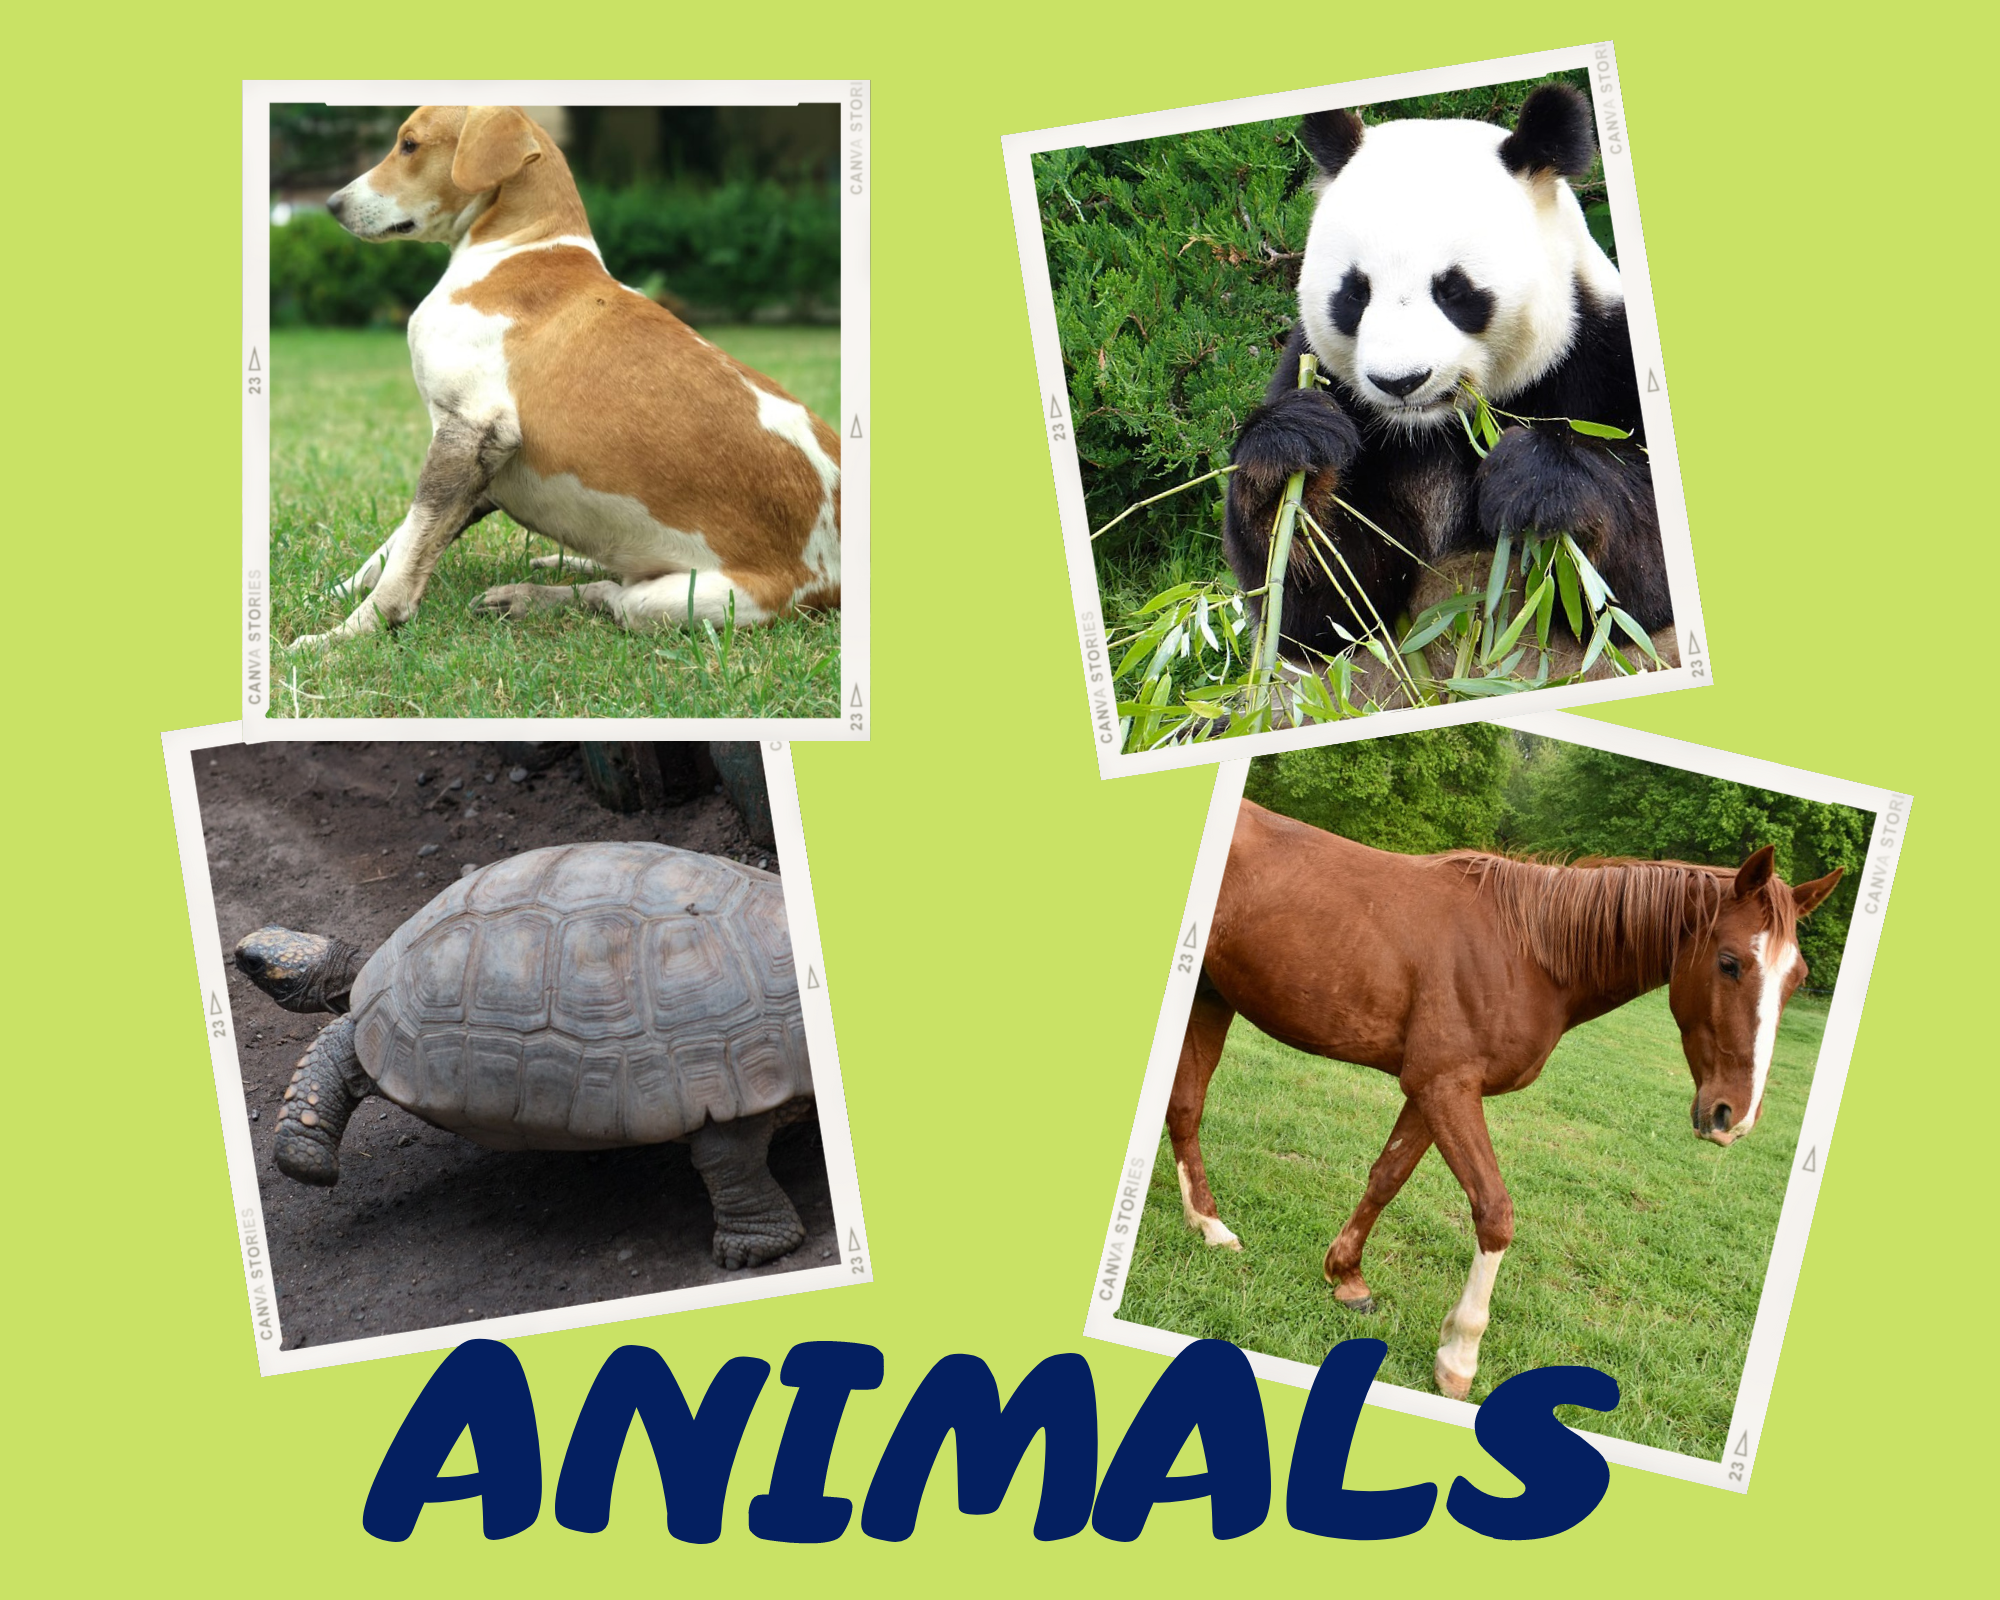 La imagen muestra varios animales.